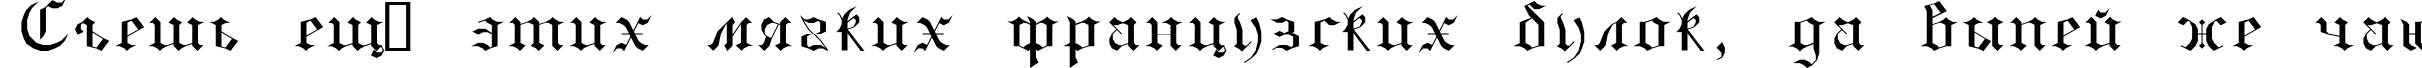 Пример написания шрифтом GothicE текста на русском